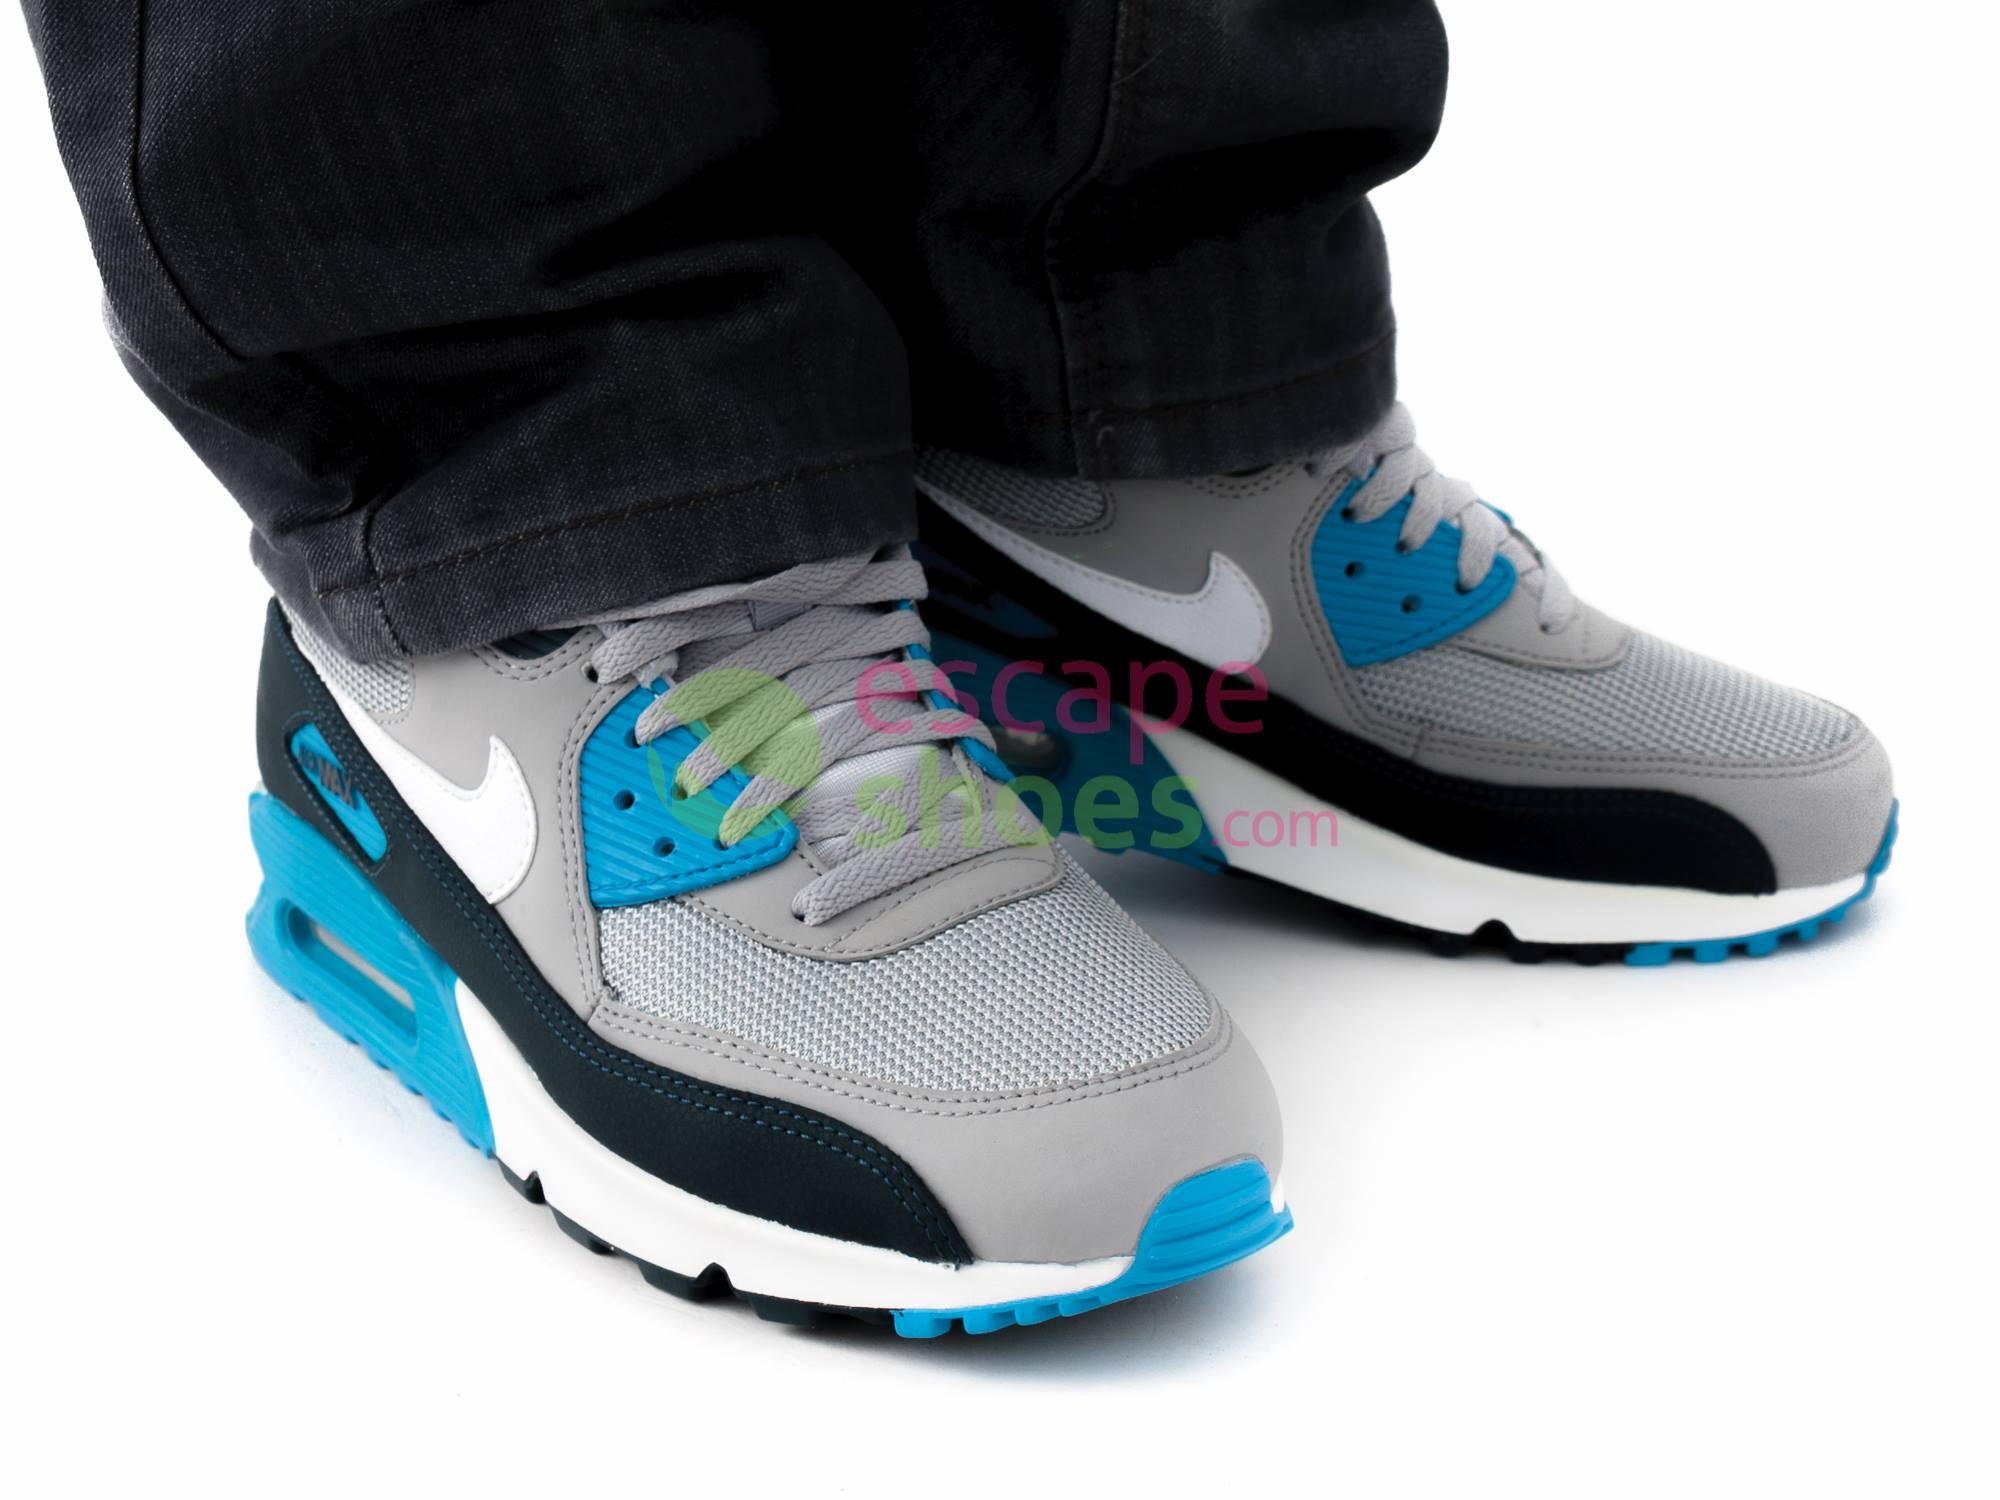 Nike Air Max 90 hombres azules esenciales zapatillas deportivas